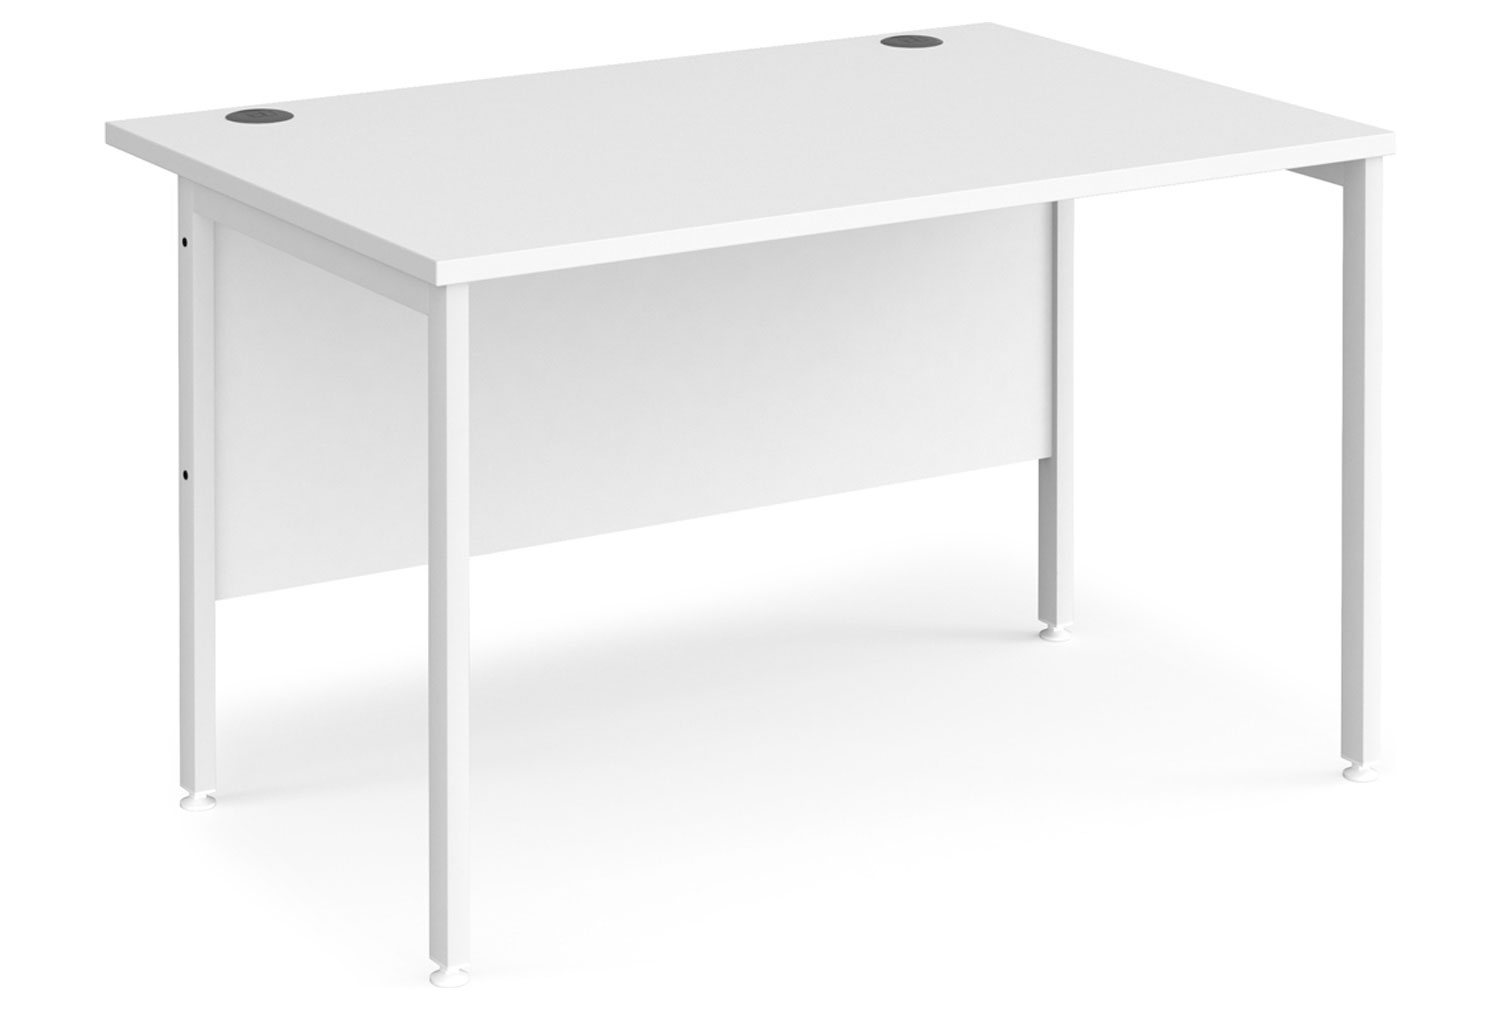 All White Premium H-Leg Rectangular Office Desk, 120wx80dx73h (cm), Fully Installed